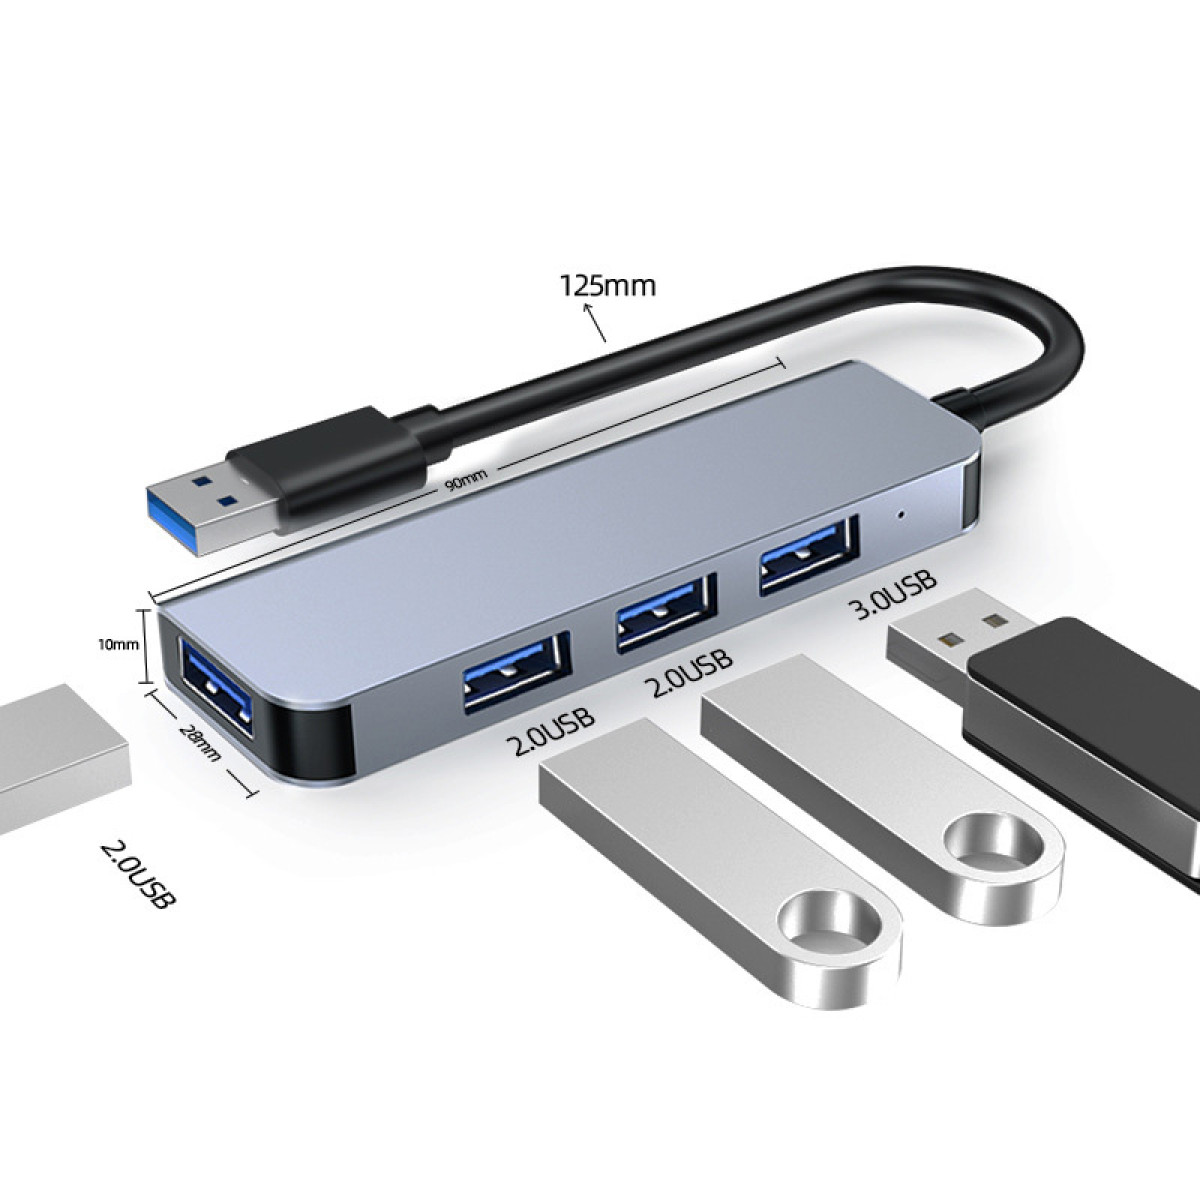 INF USB-Hub mit 1 USB2.0-Ports und USB3.0-Port USB-Hub, Silbergrau 3